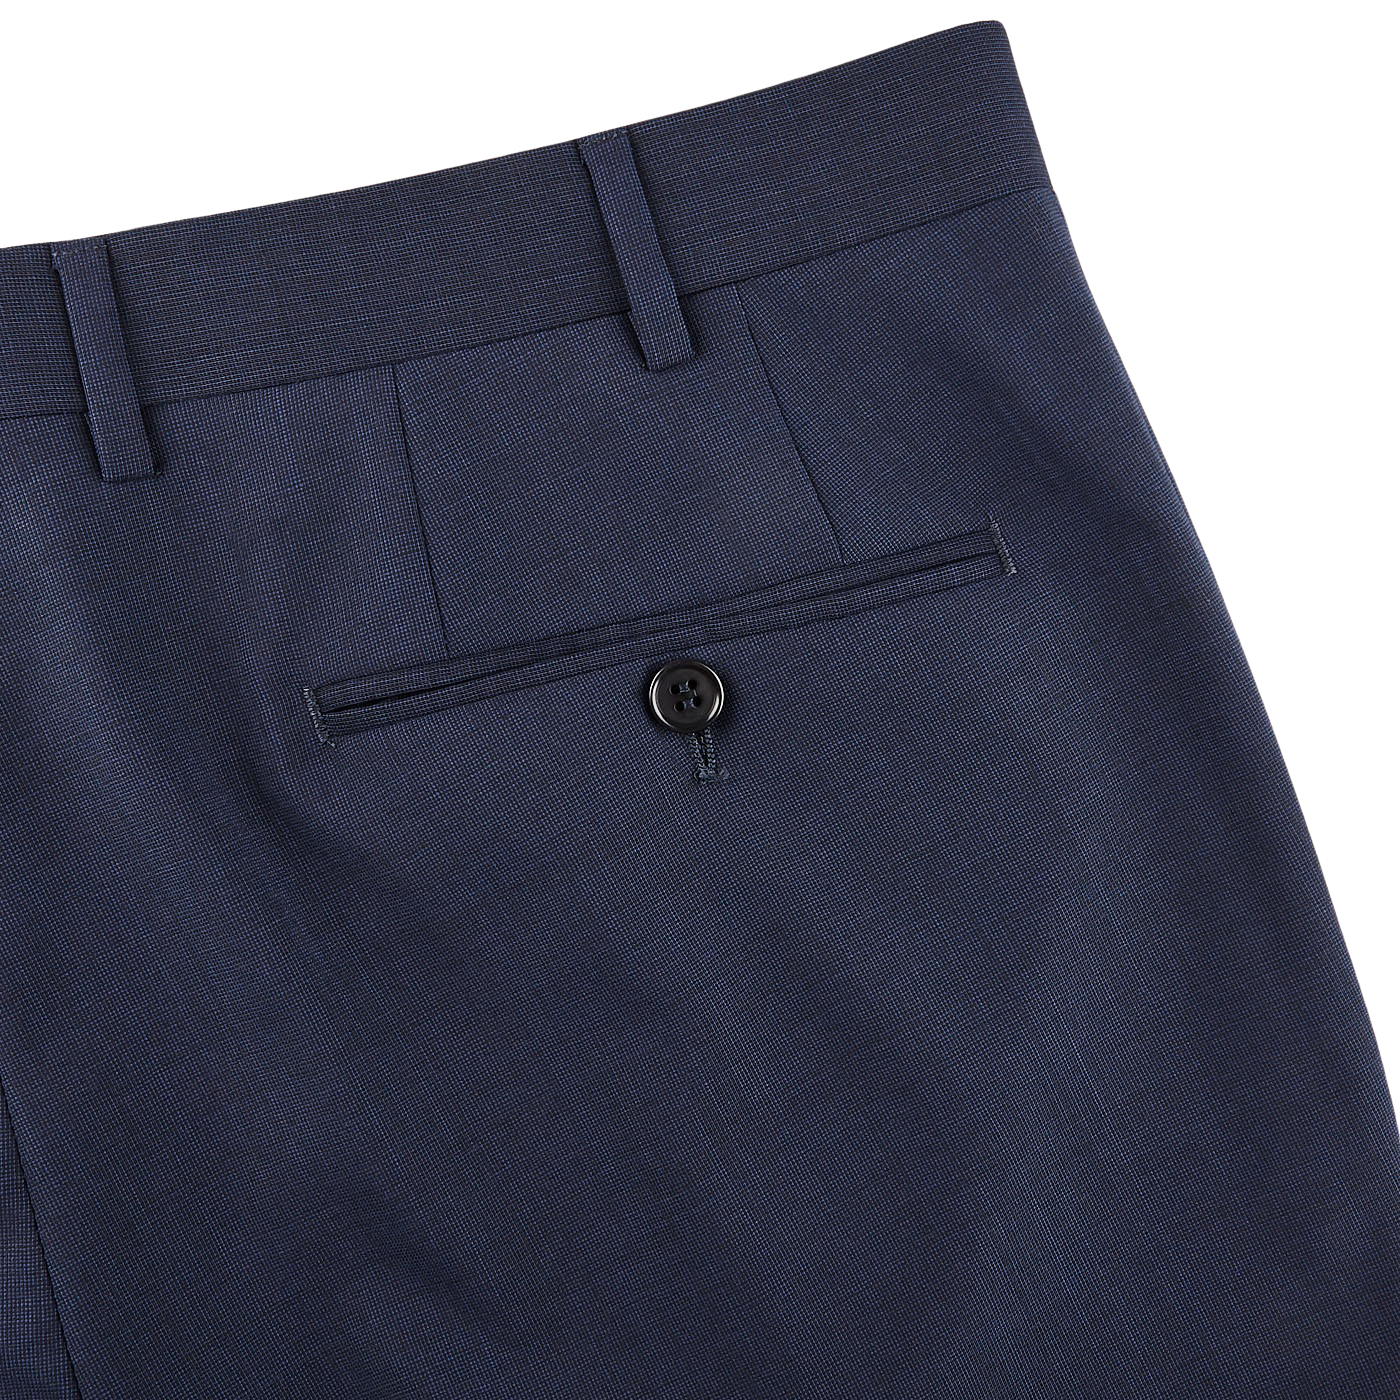 Canali Blue Melange Travel Wool Single Pleat Trousers Pocket